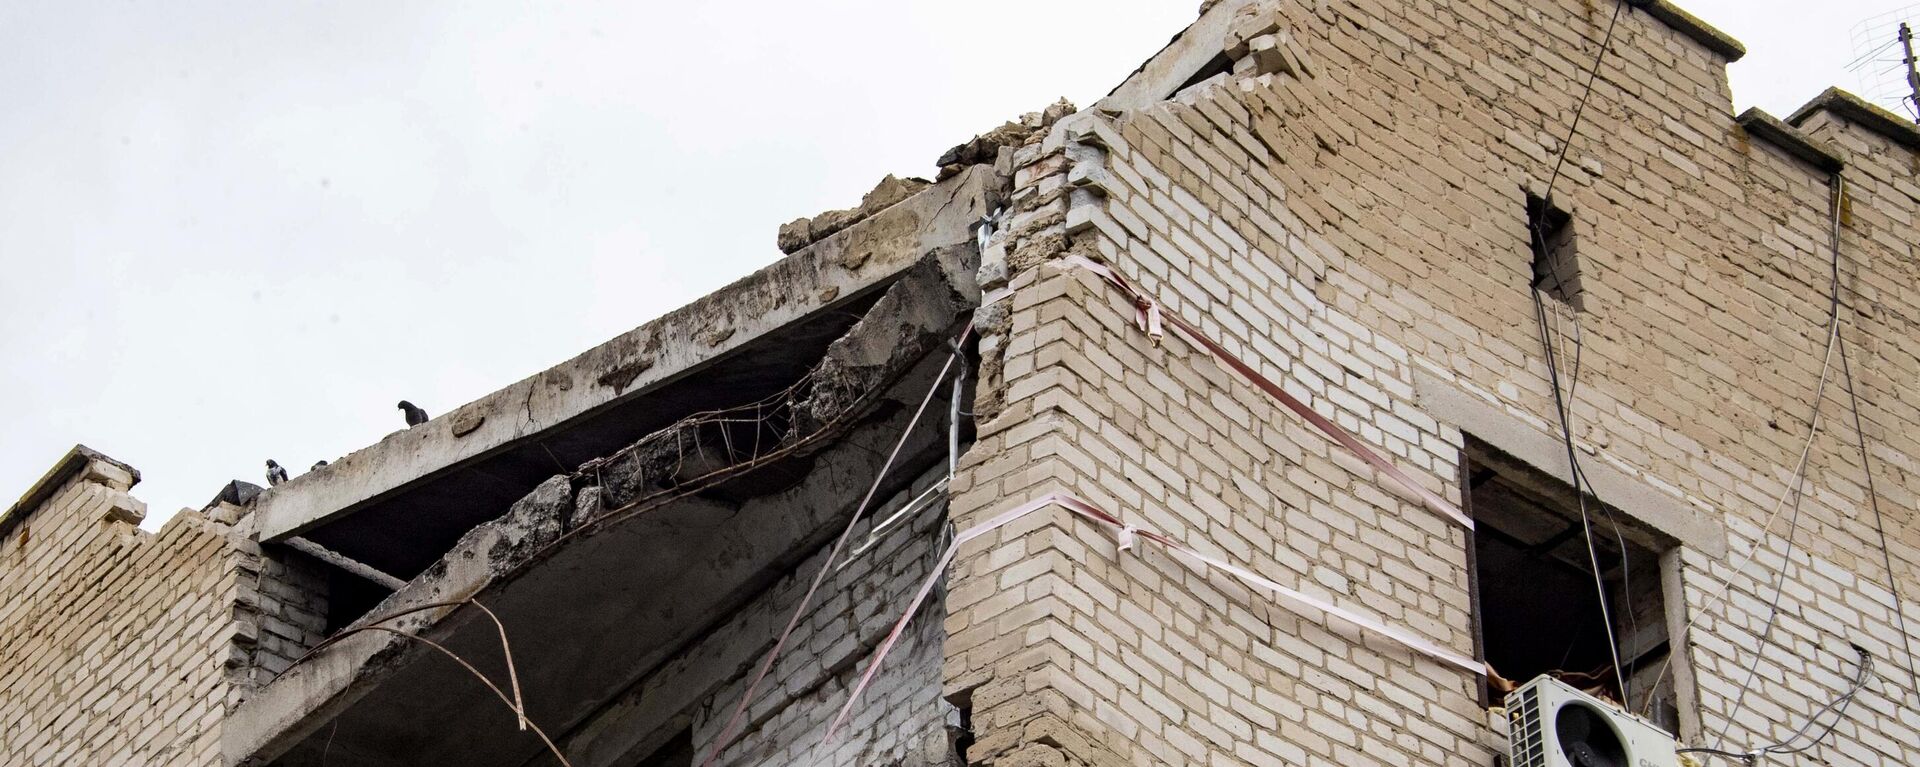 تضرر مبنى سكني نتيجة قصف القوات المسلحة الأوكرانية في مدينة فاسيليفكا بمنطقة زابوروجيه، 14 سبتمبر 2022 - سبوتنيك عربي, 1920, 26.09.2022